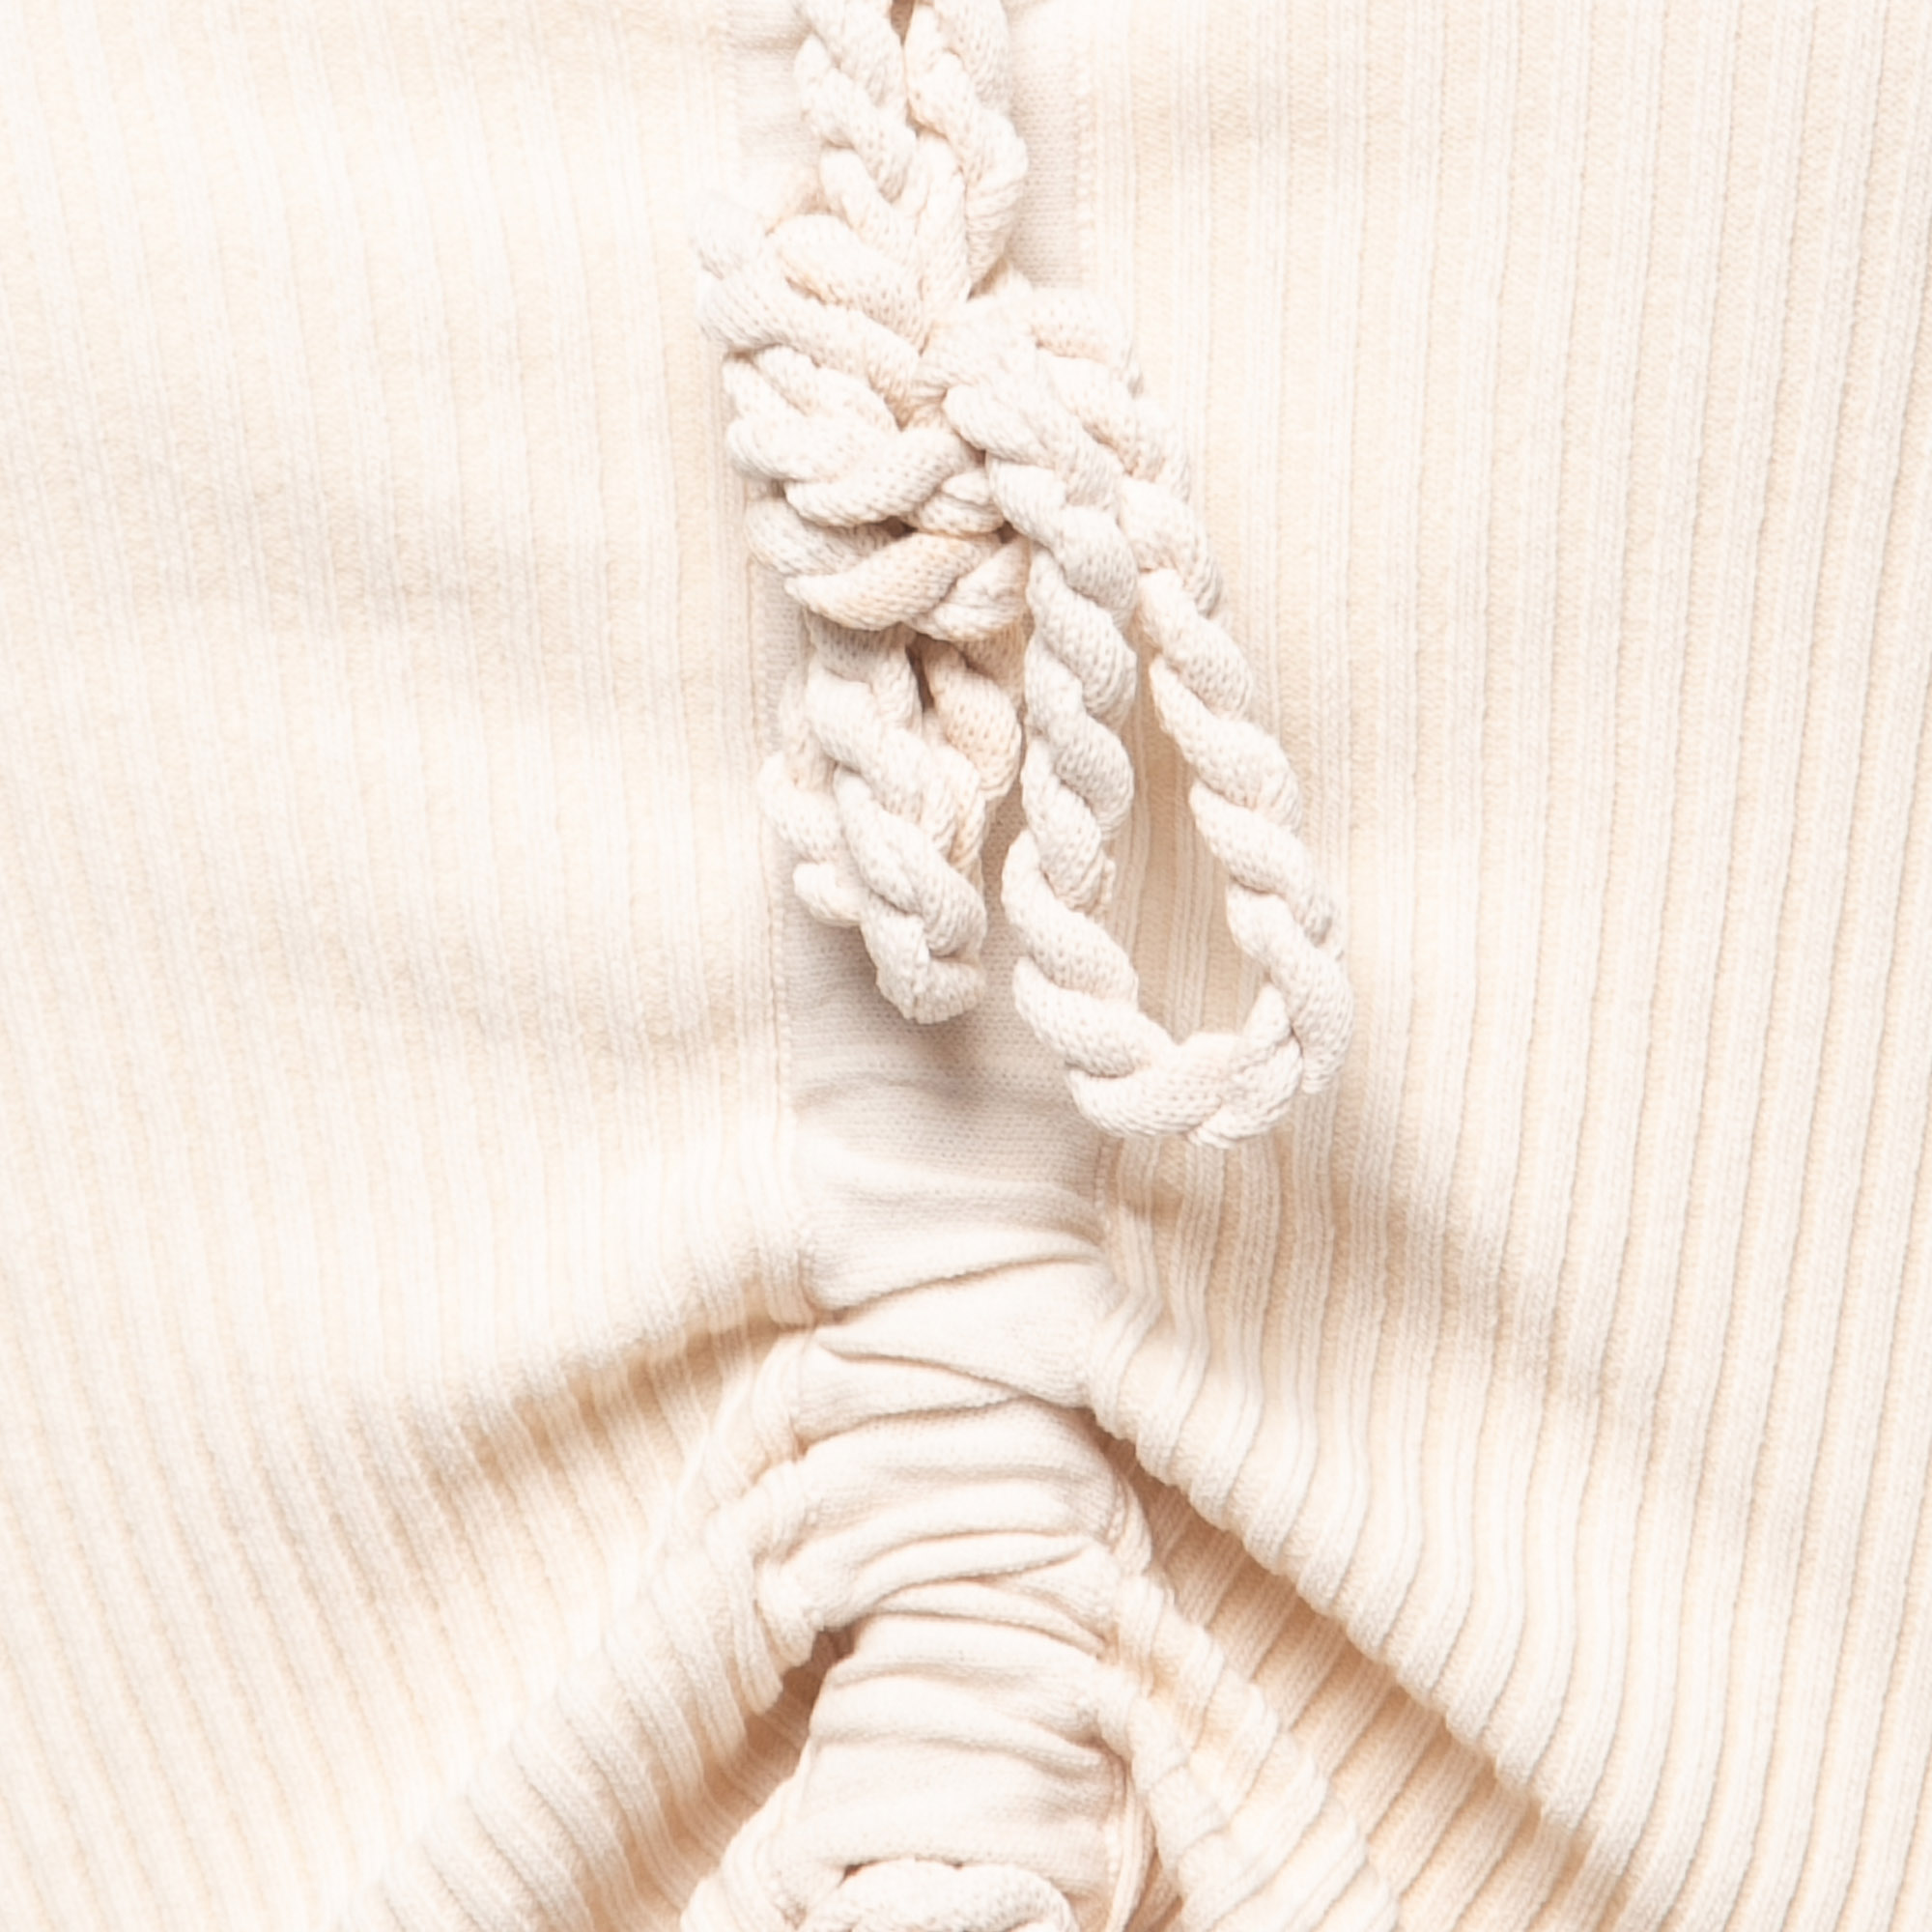 Nicholas Beige Knit Cutout Fluisa Midi Dress S